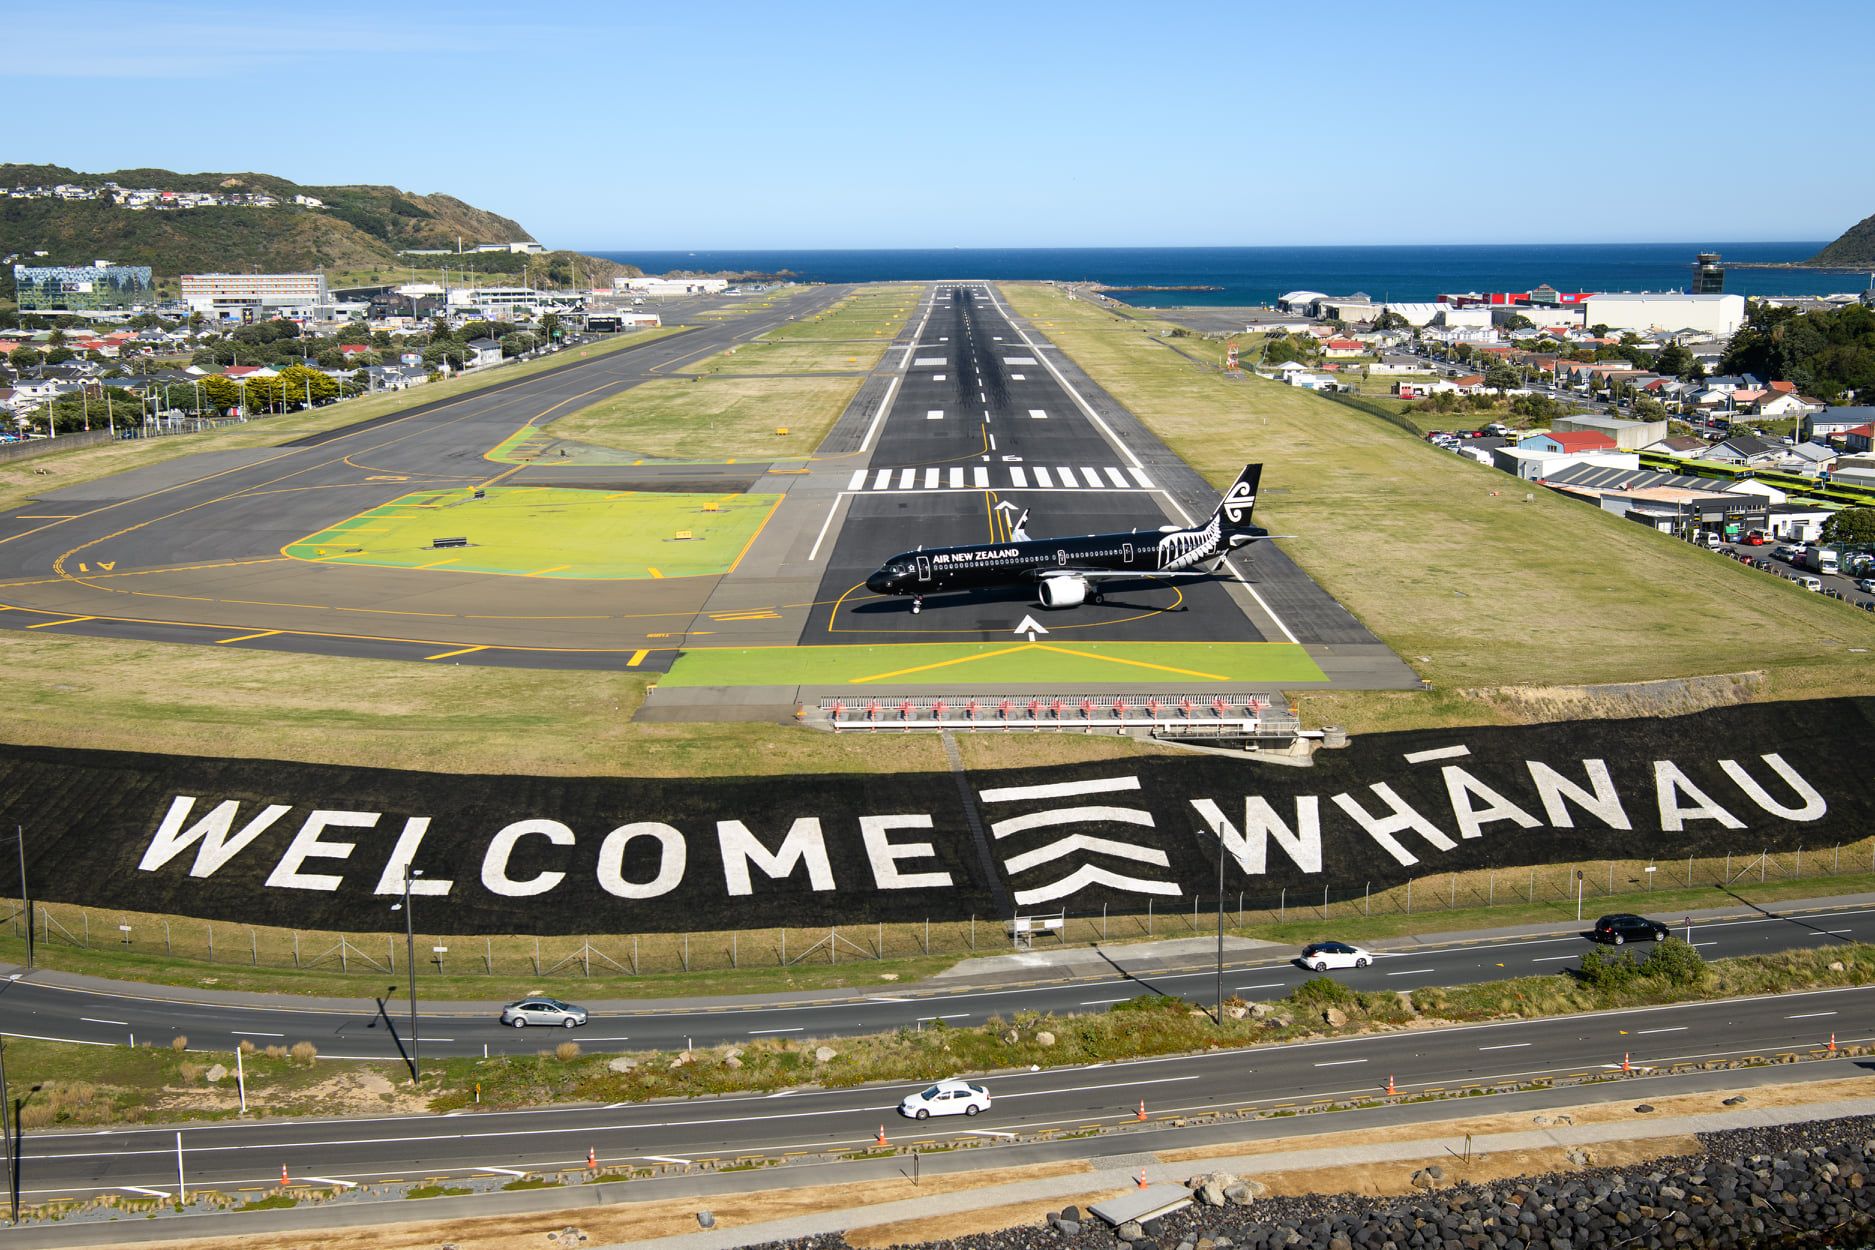 WLG AIRPORT NZ